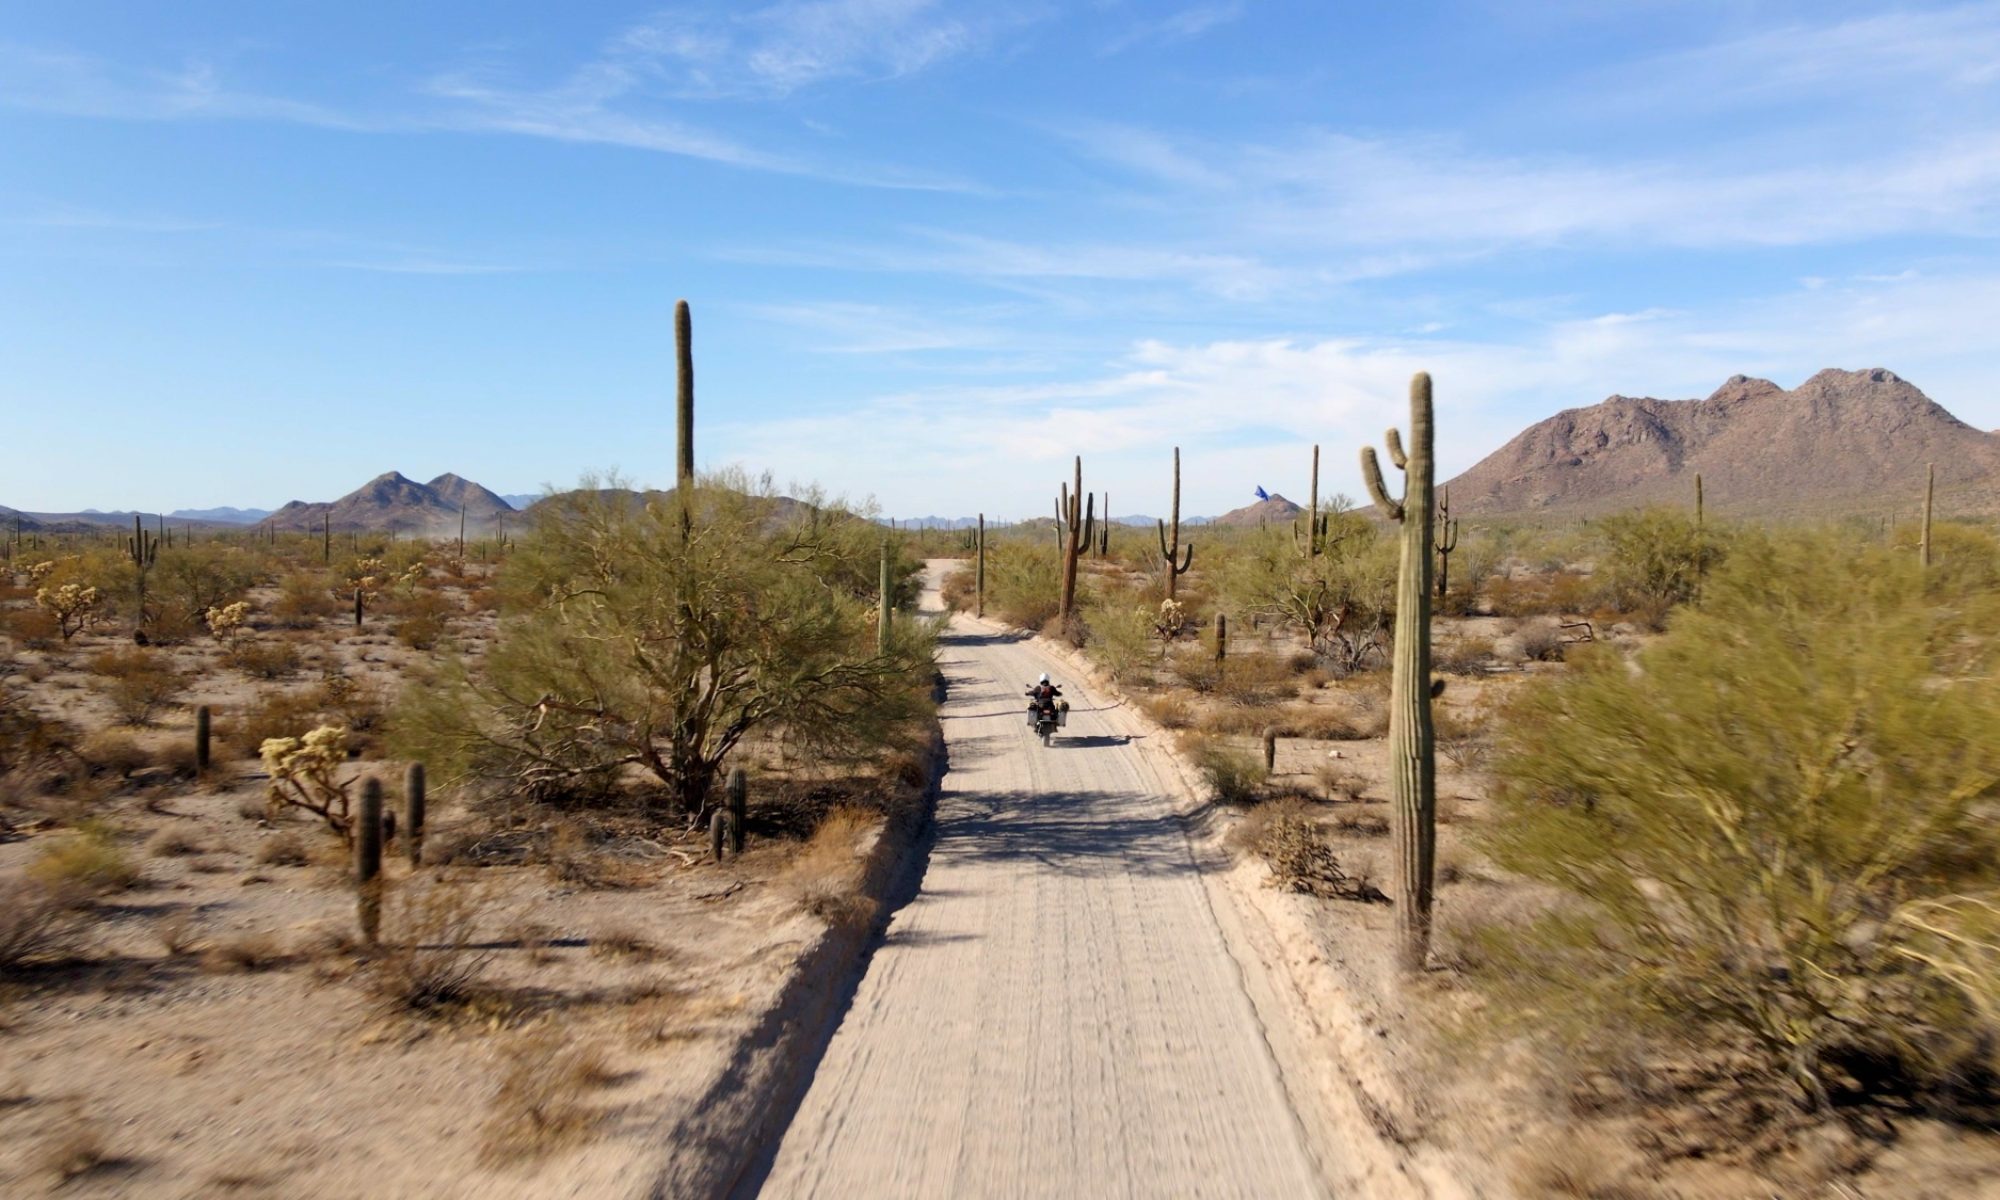 Motorcycle on El Camino del Diablo road in Arizona